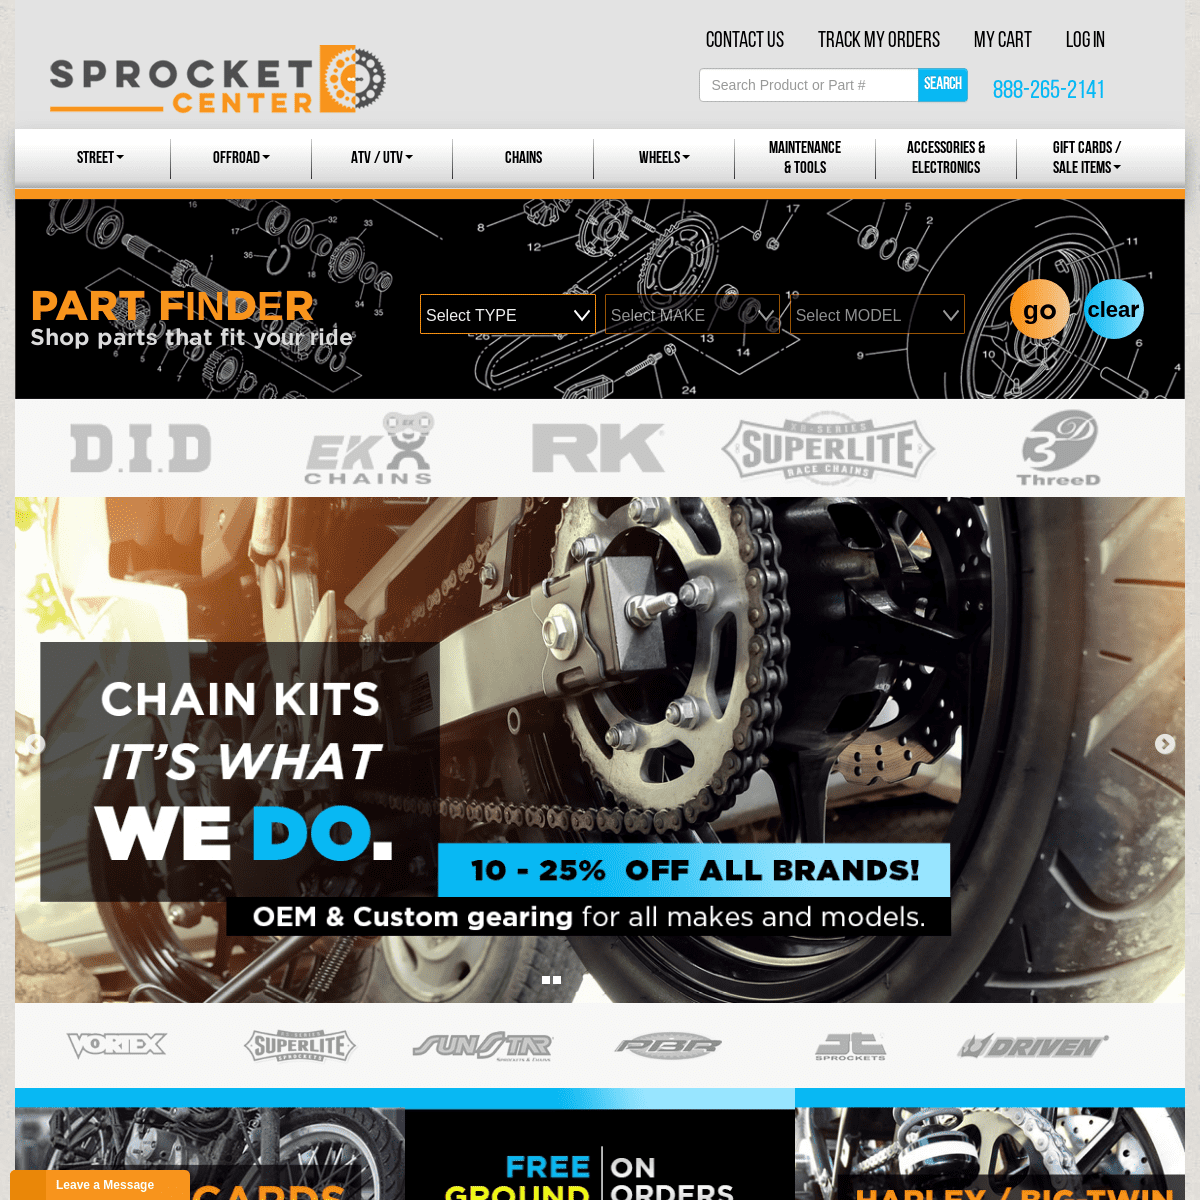 A complete backup of sprocketcenter.com